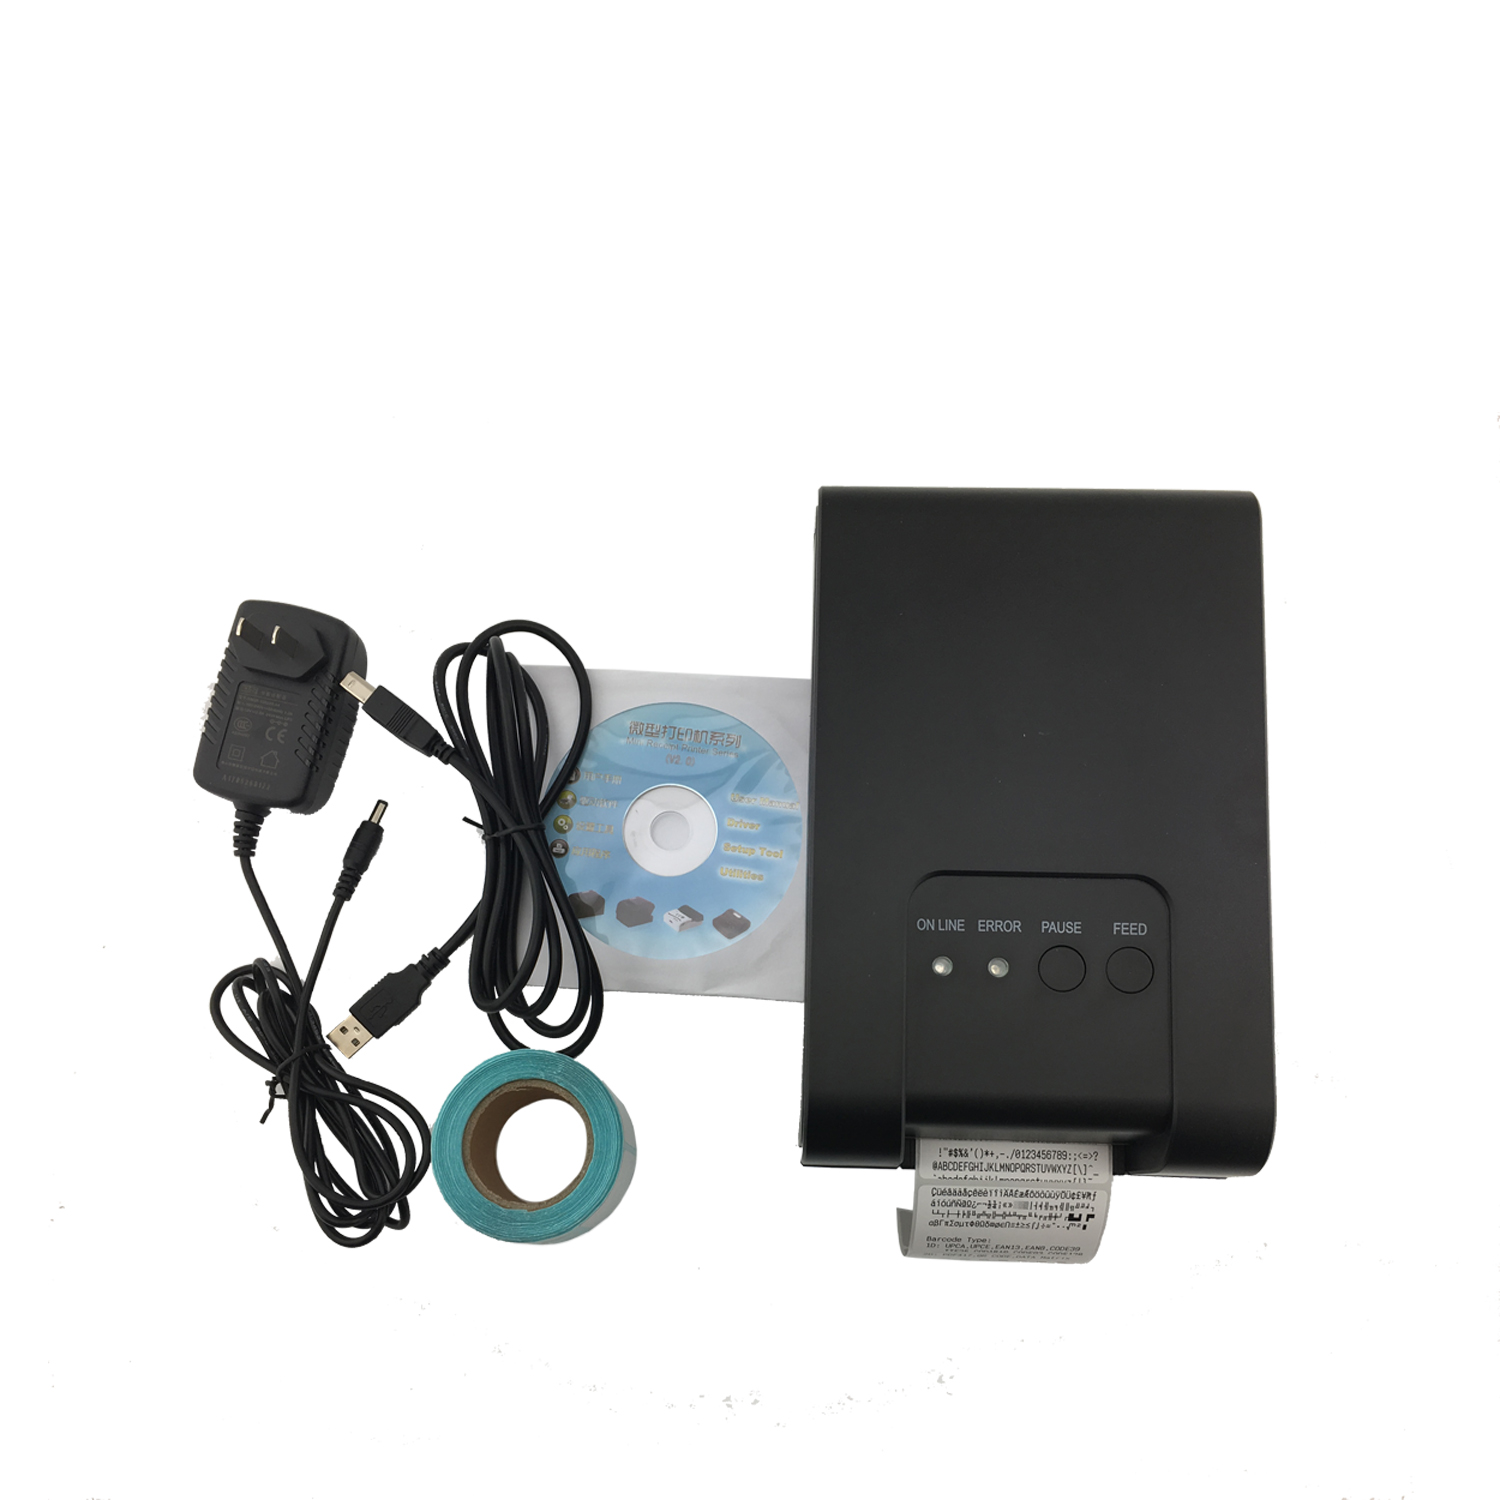 桌面 ESC/POS 58mm USB 以太网 USB 接口热敏条码标签打印机 HCC-TL21